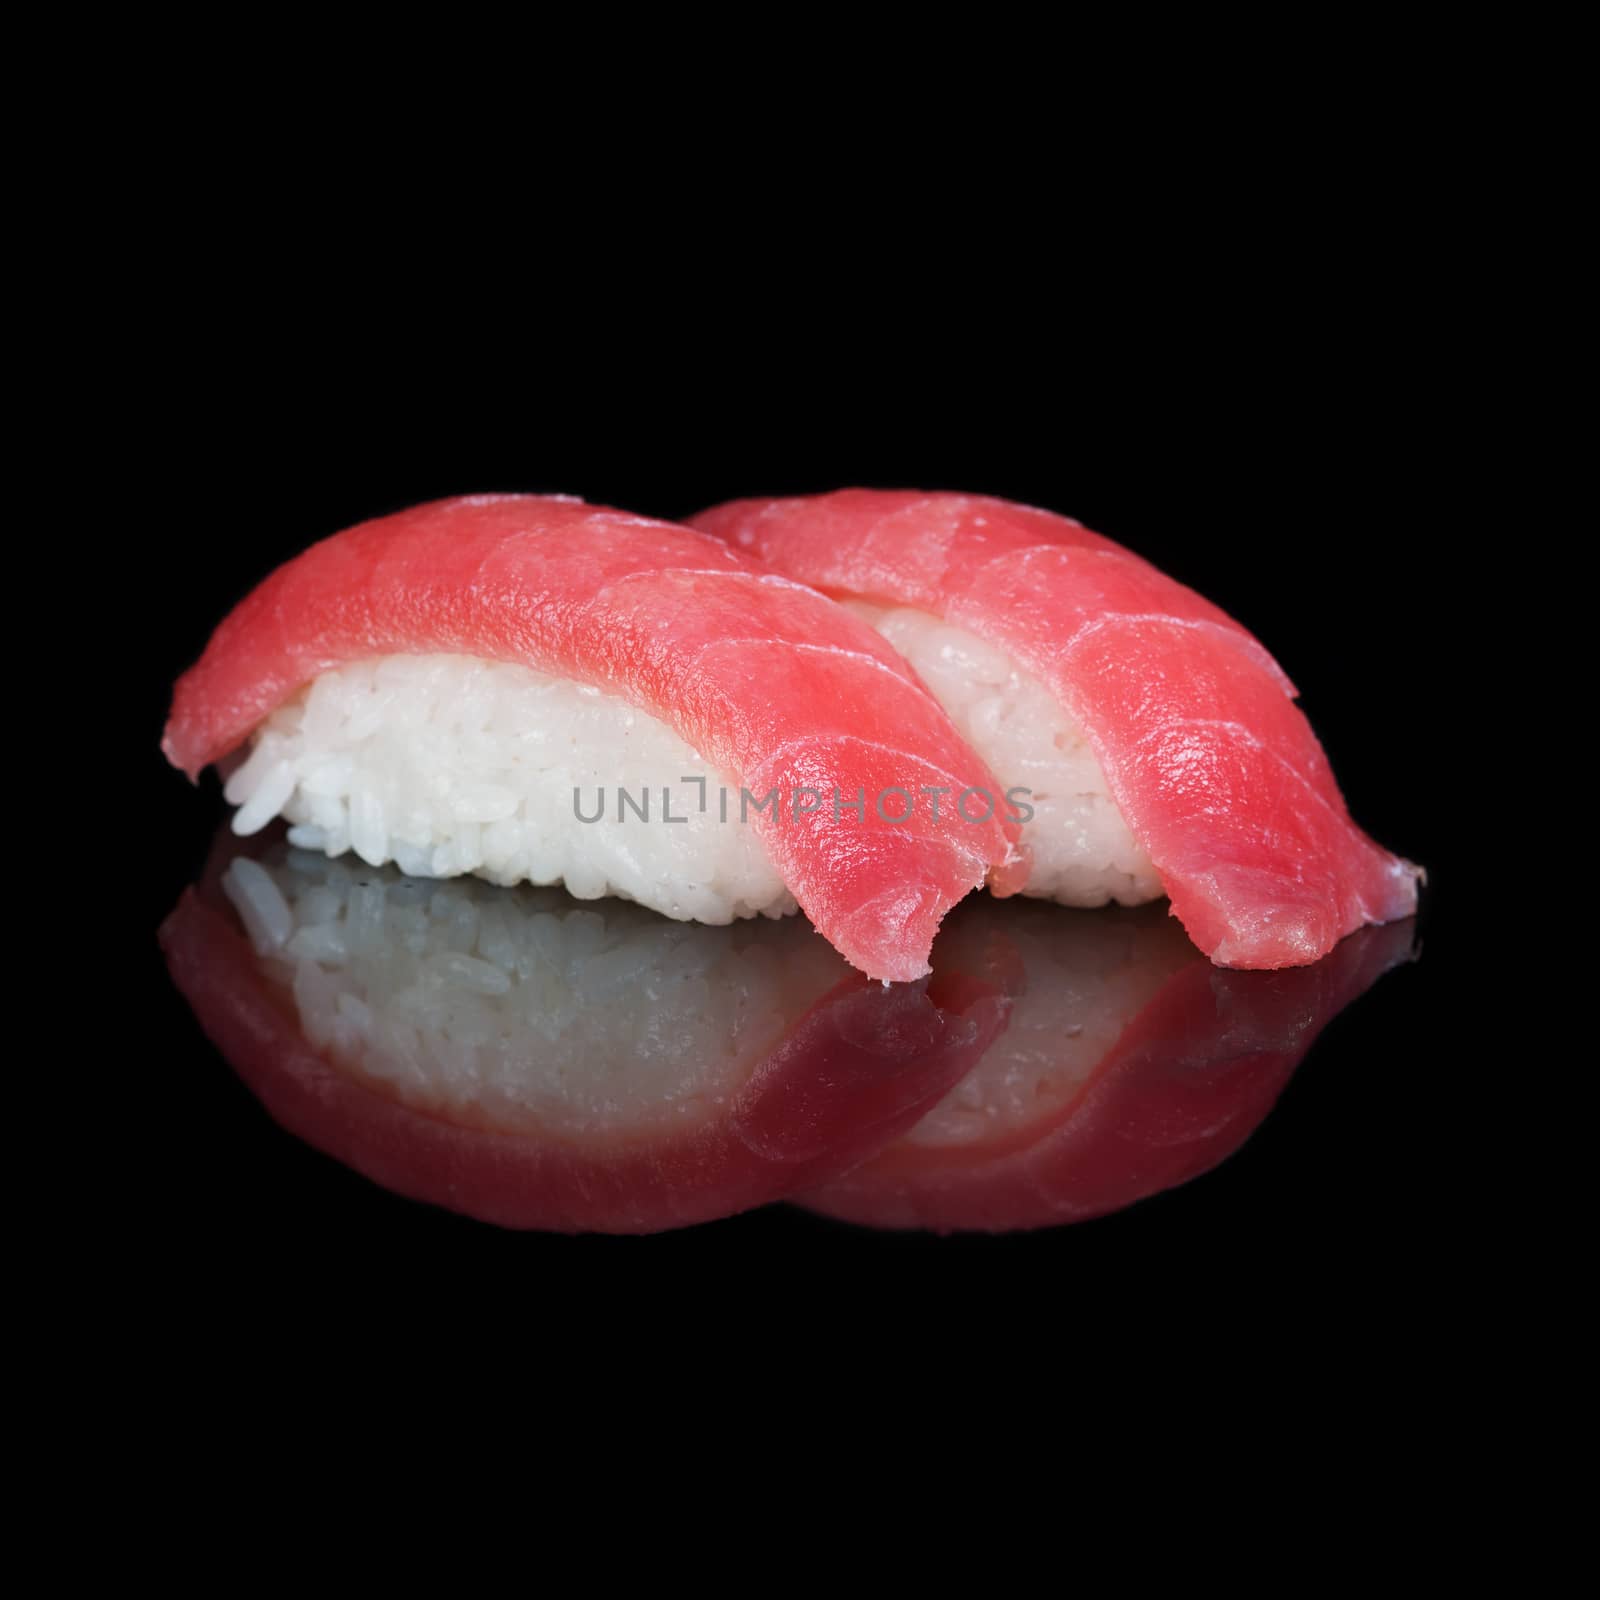 Tuna sushi on black background